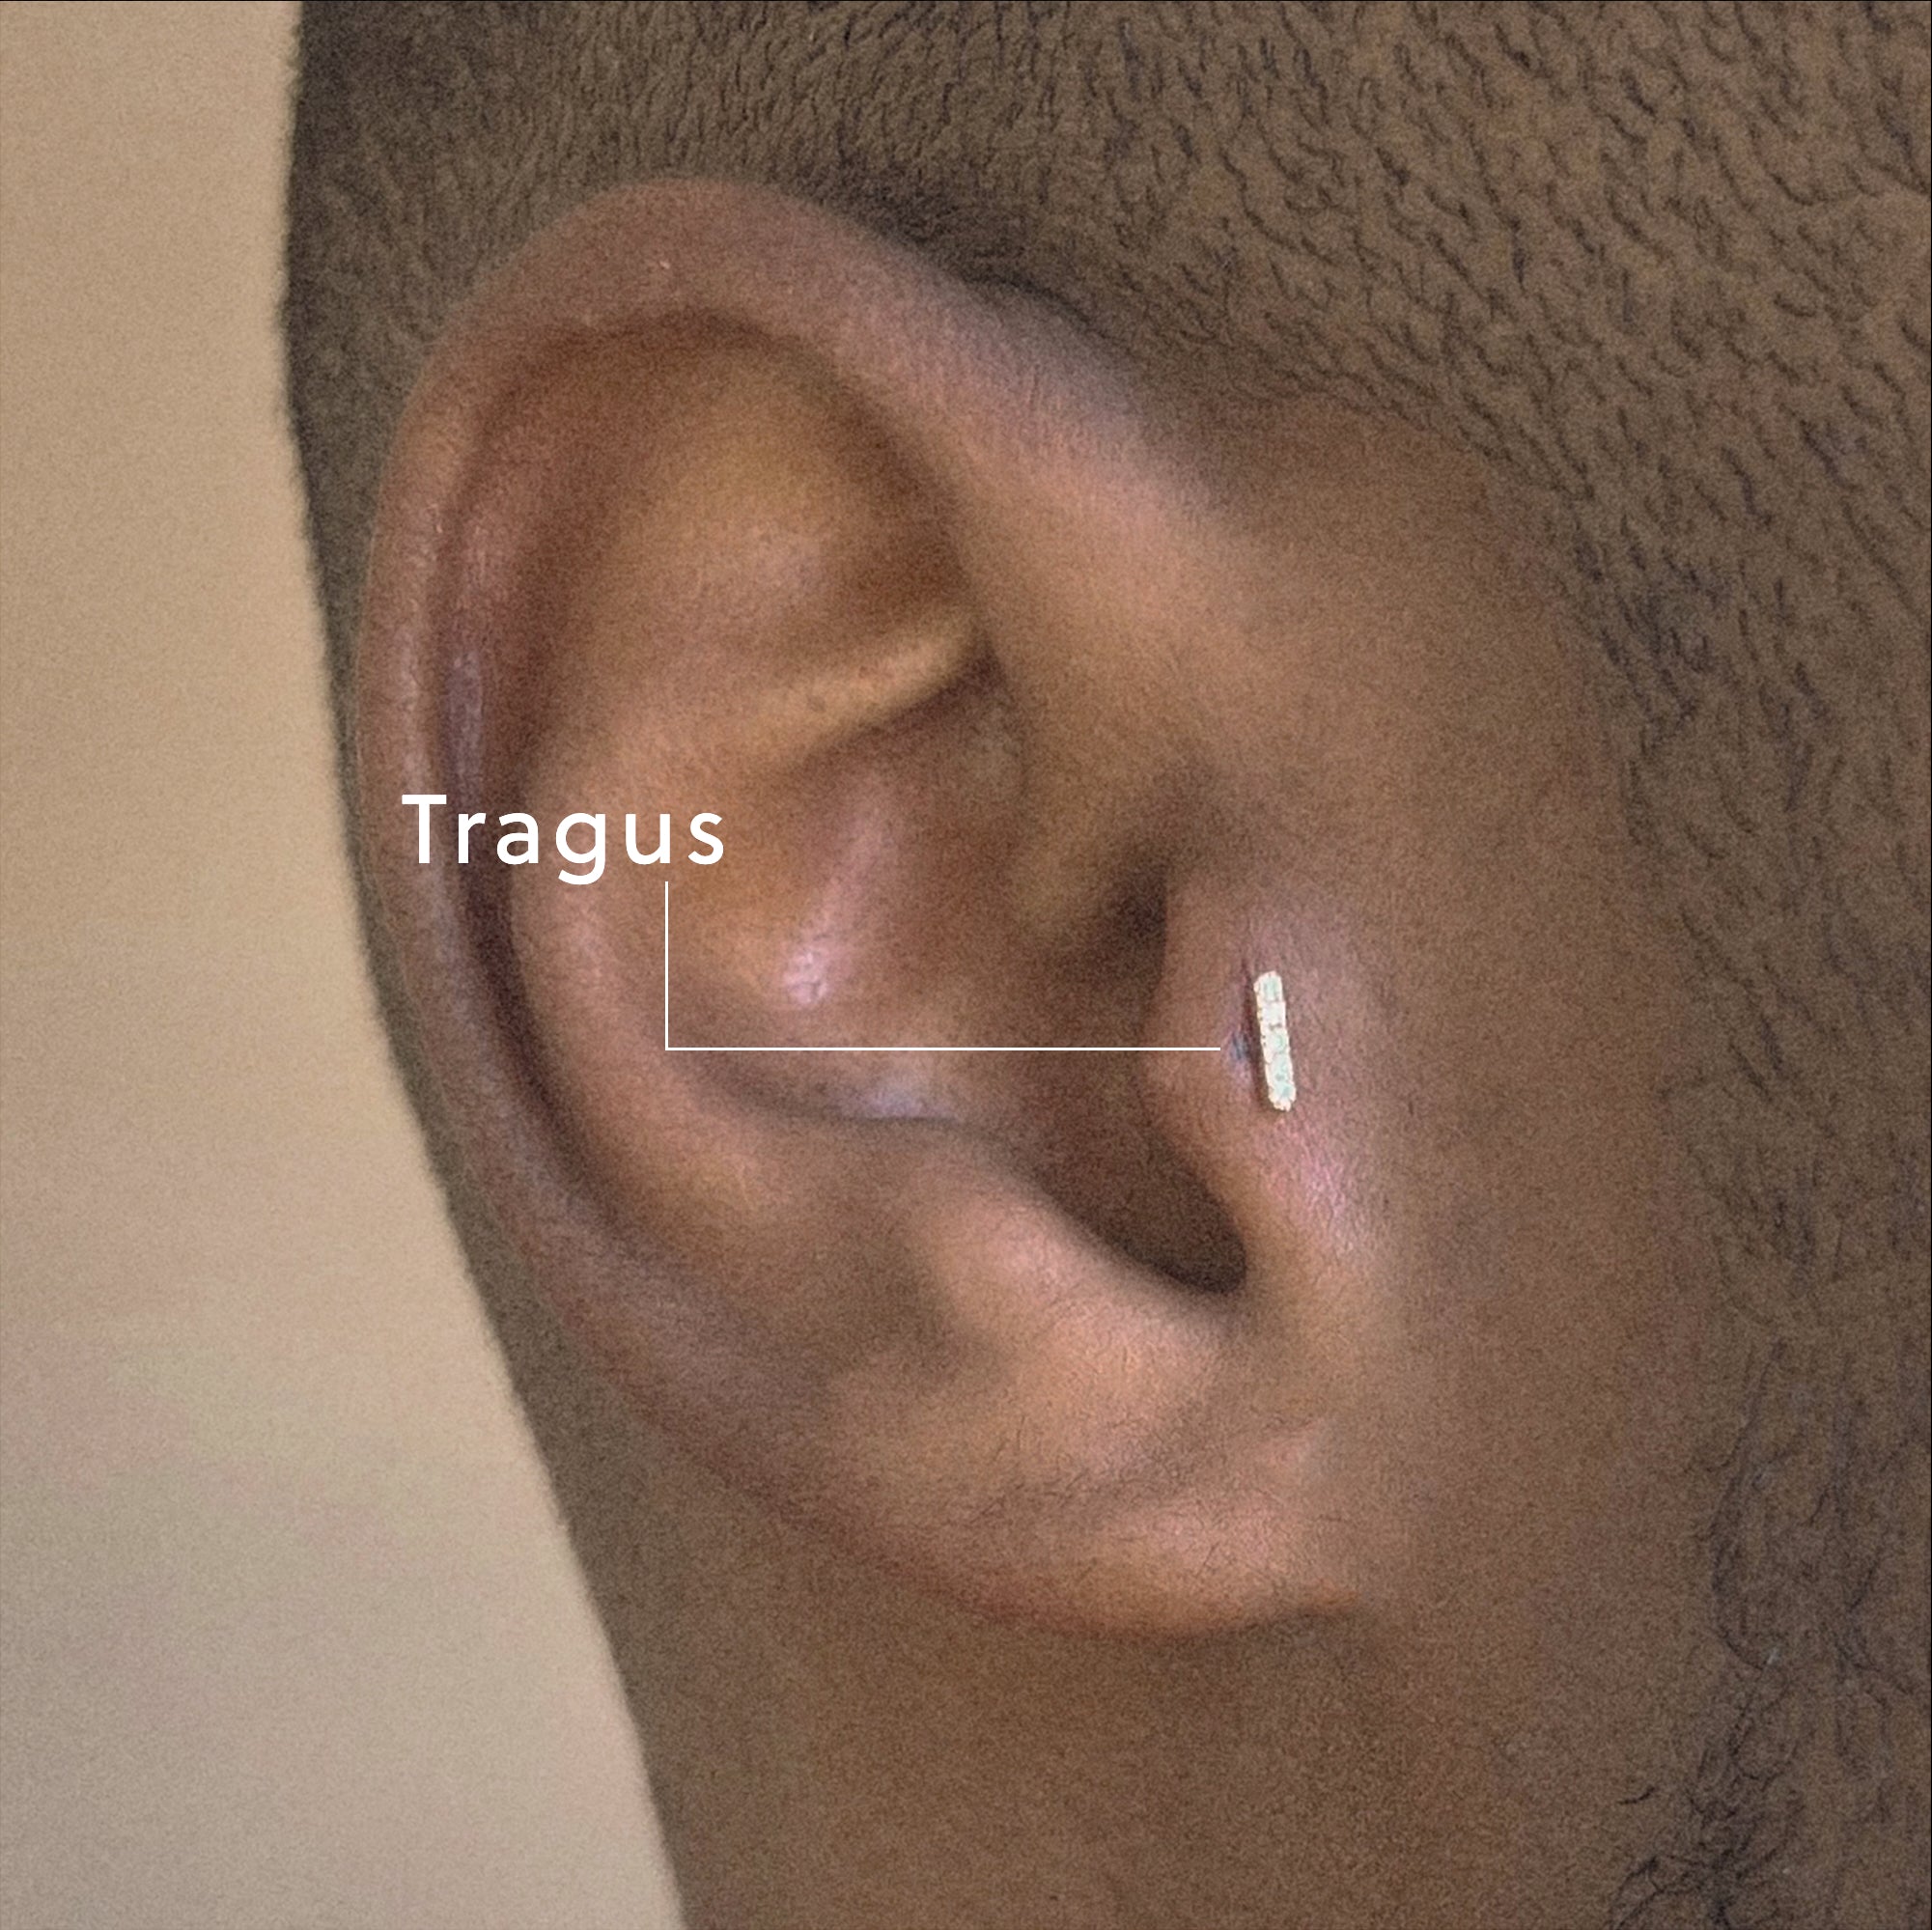 Tragus Piercings